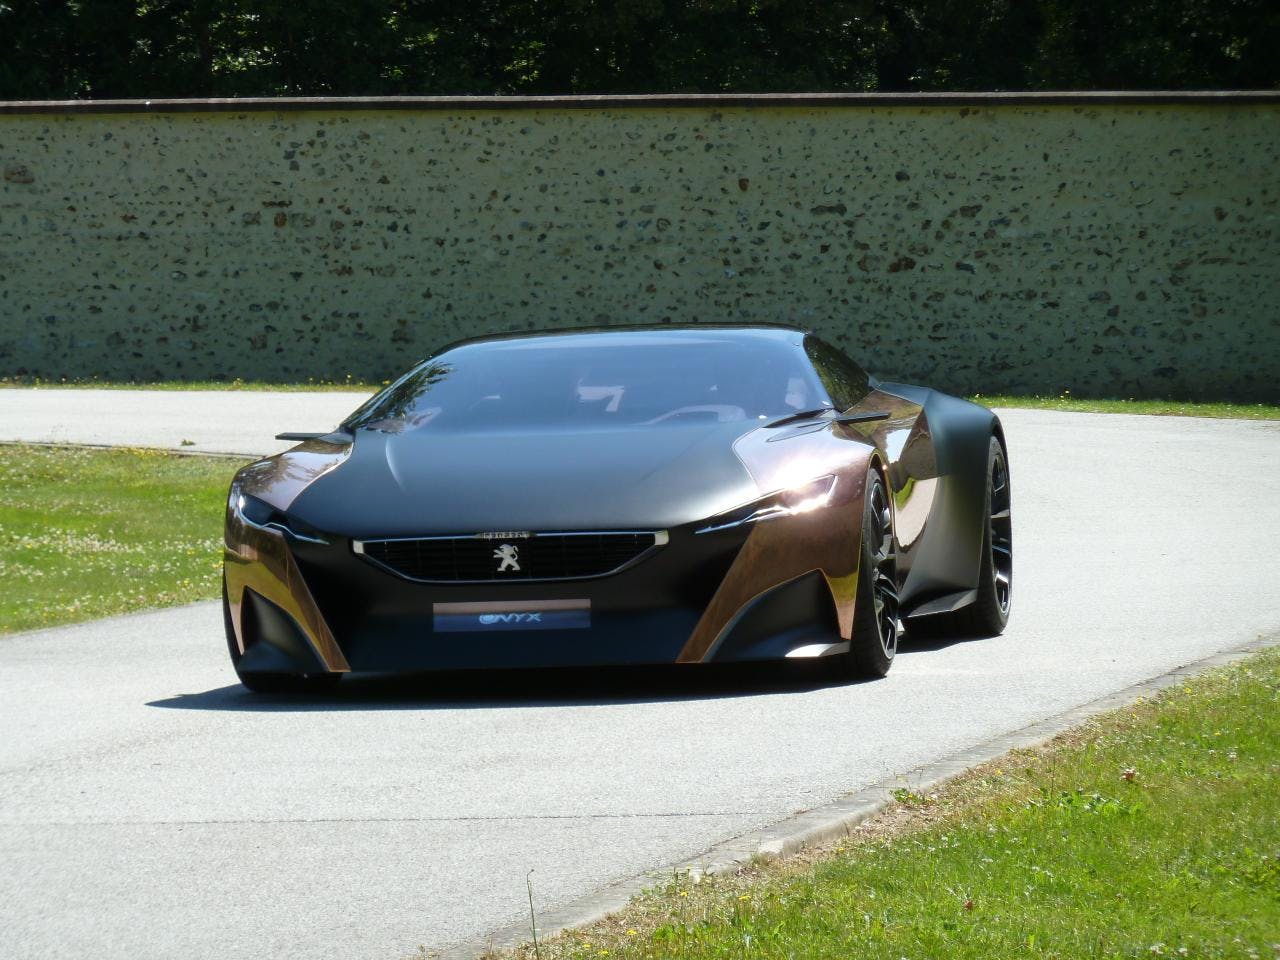 Peugeot Premiers ‘Design & Driving’ Marketing Campaign